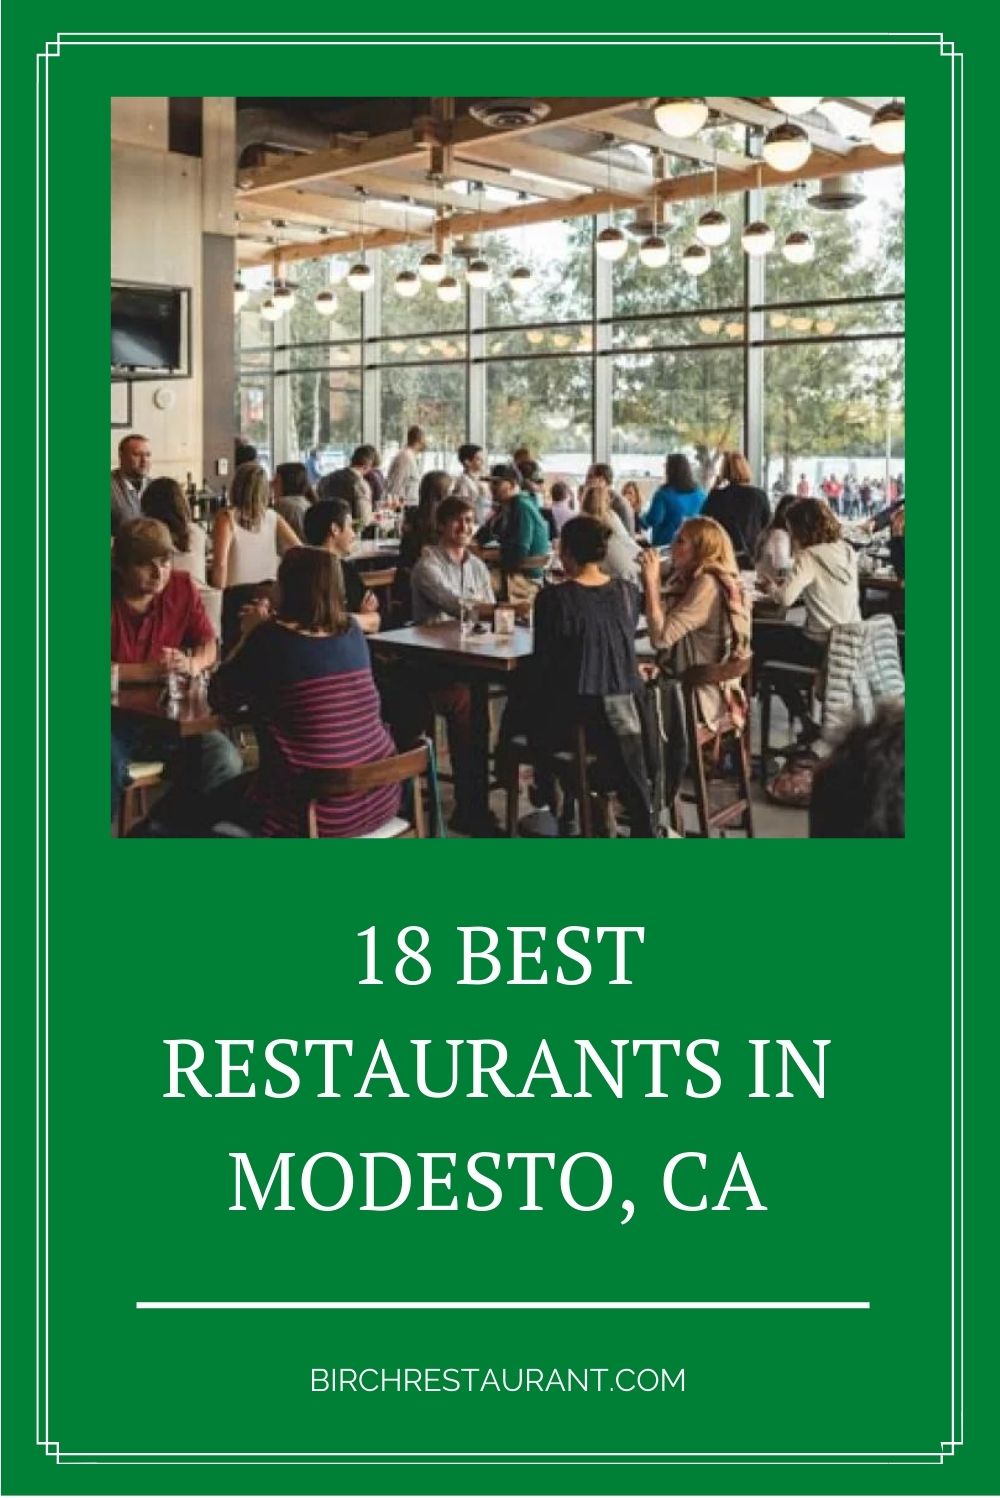 Best Restaurants in Modesto